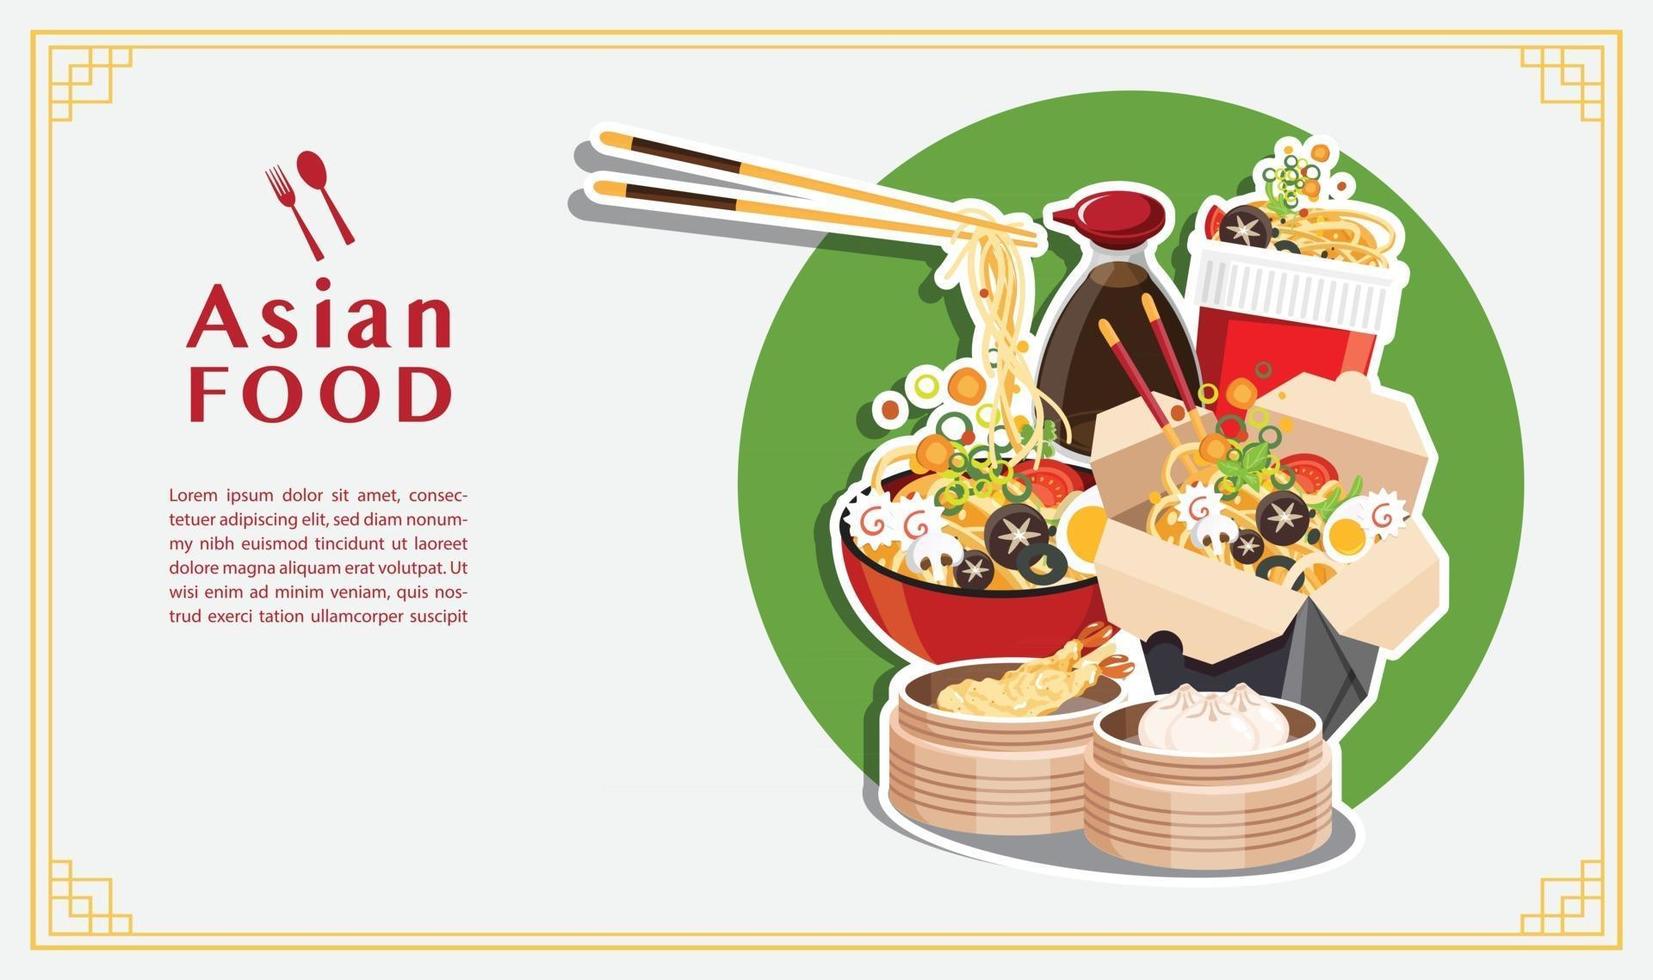 zuppa di noodle, scatola da asporto, ramen giapponese, illustrazione vettoriale